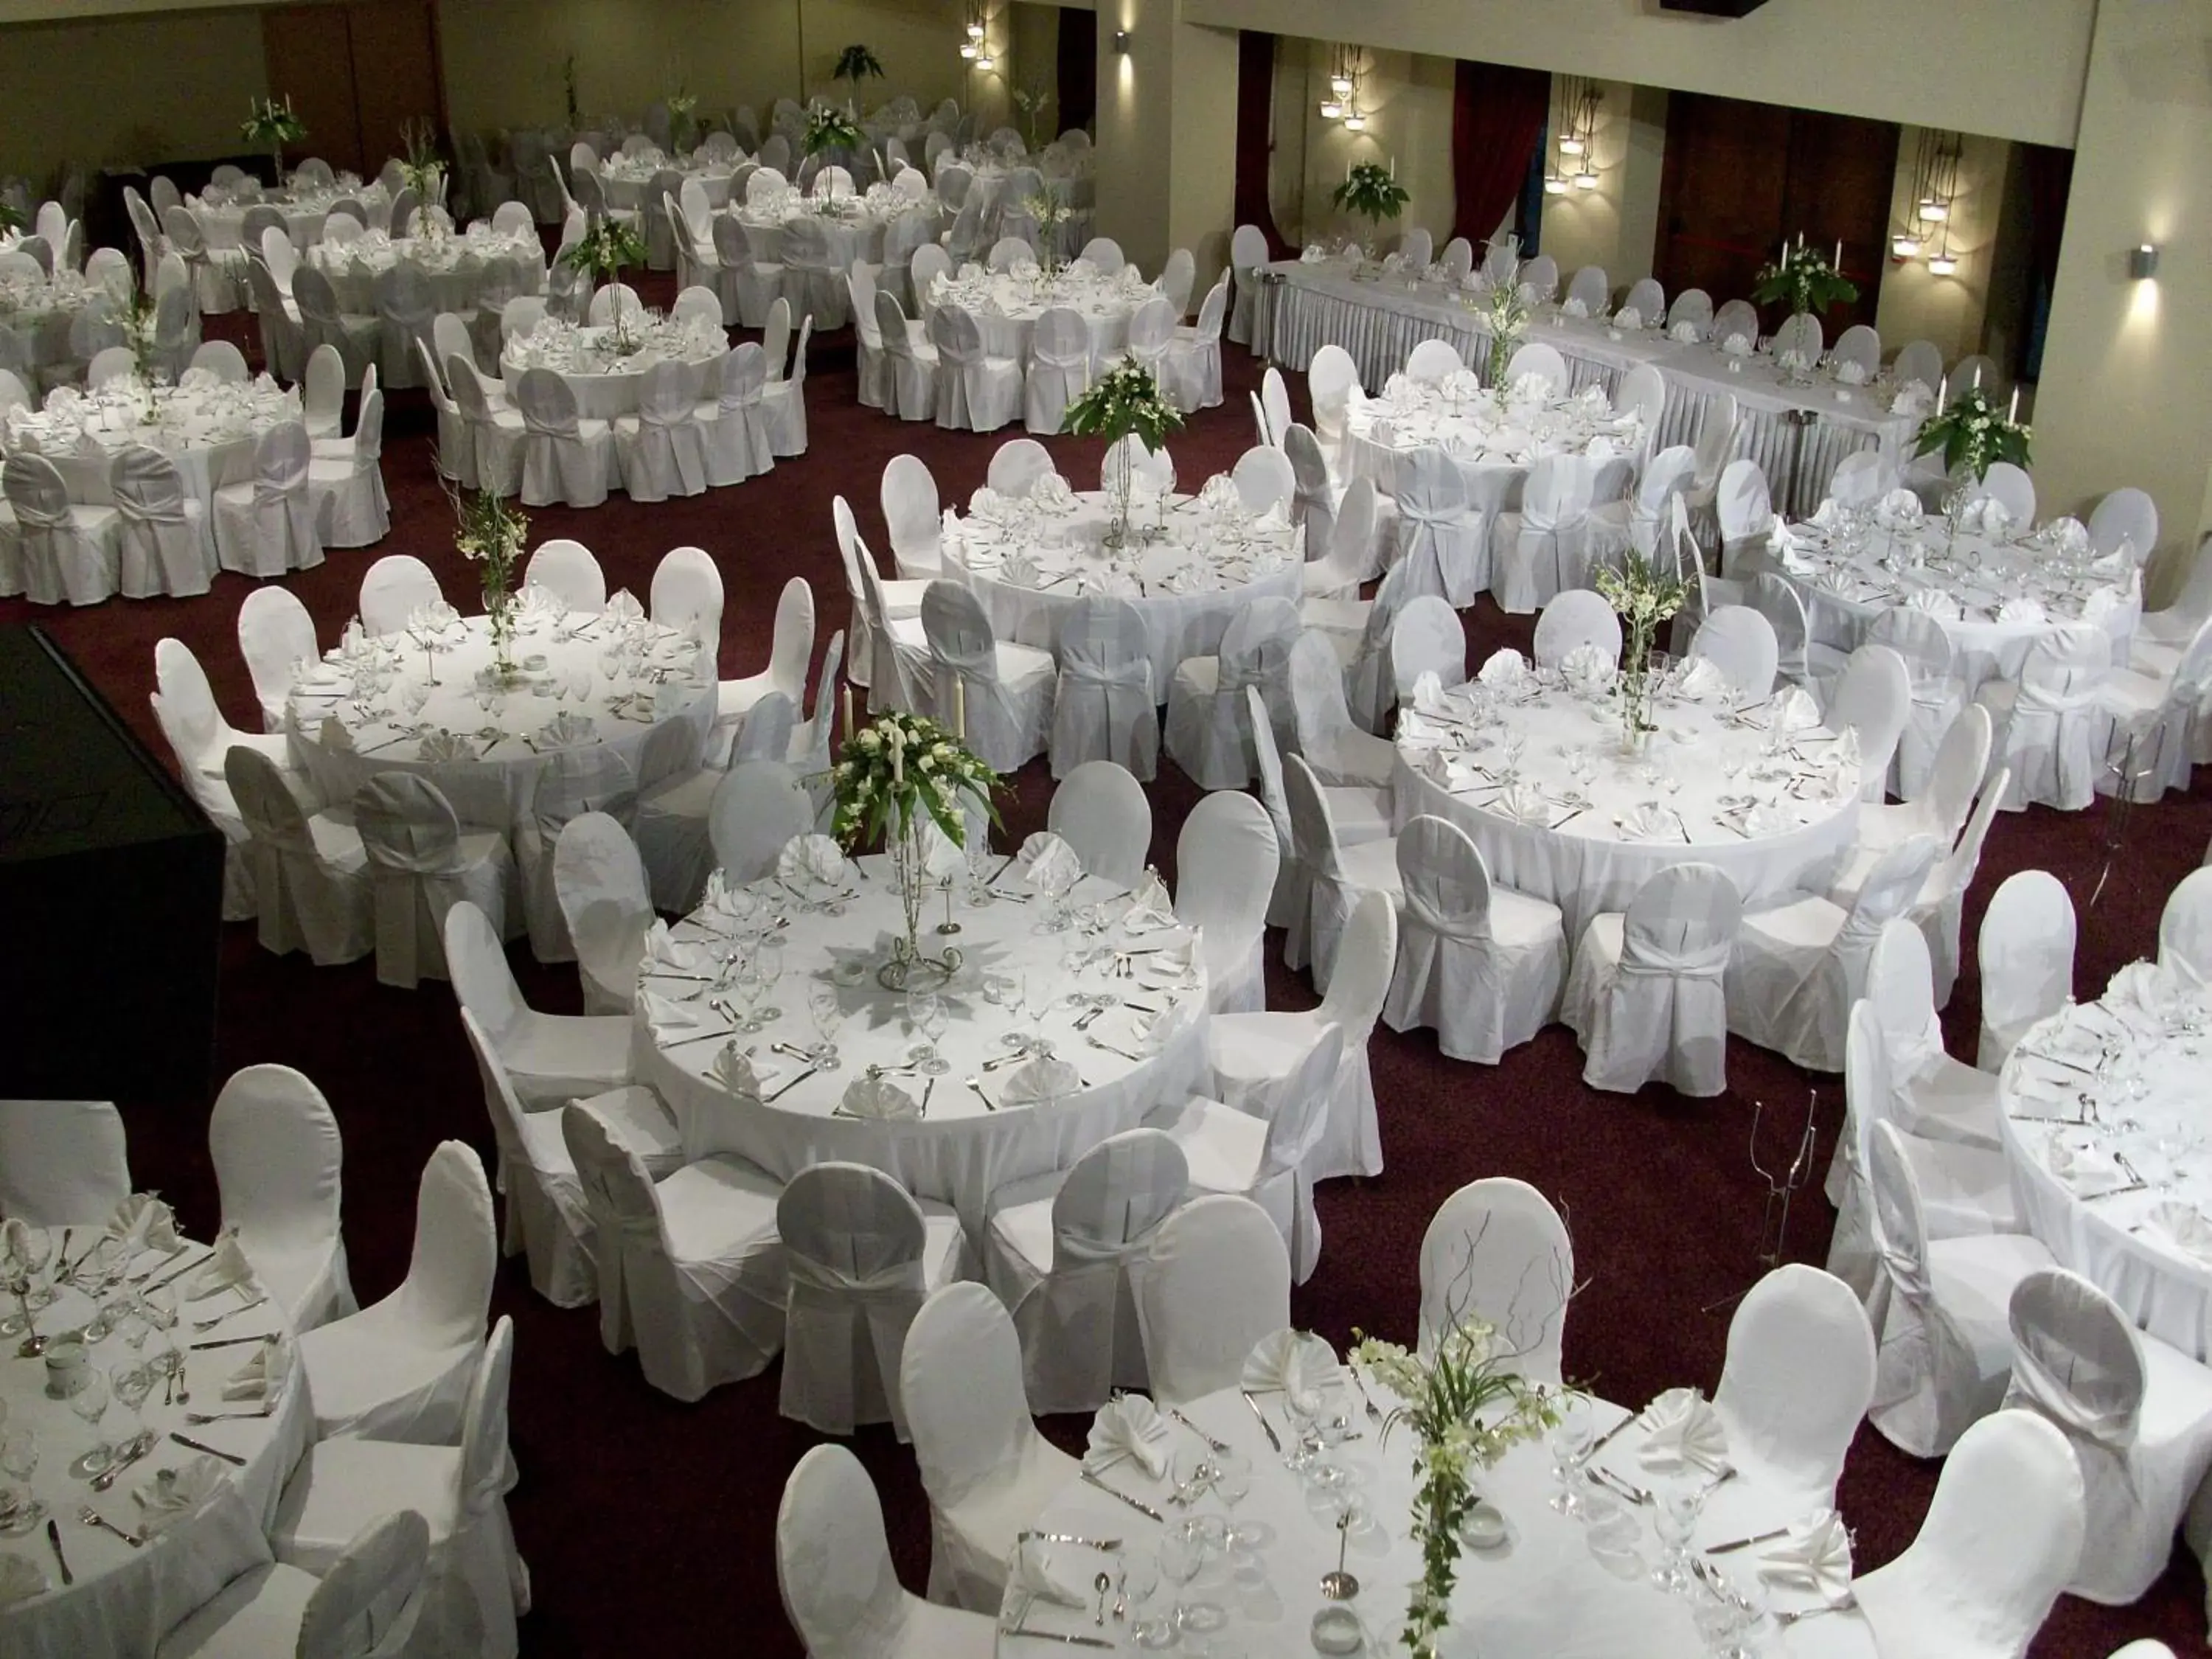 Banquet/Function facilities, Banquet Facilities in Valis Resort Hotel